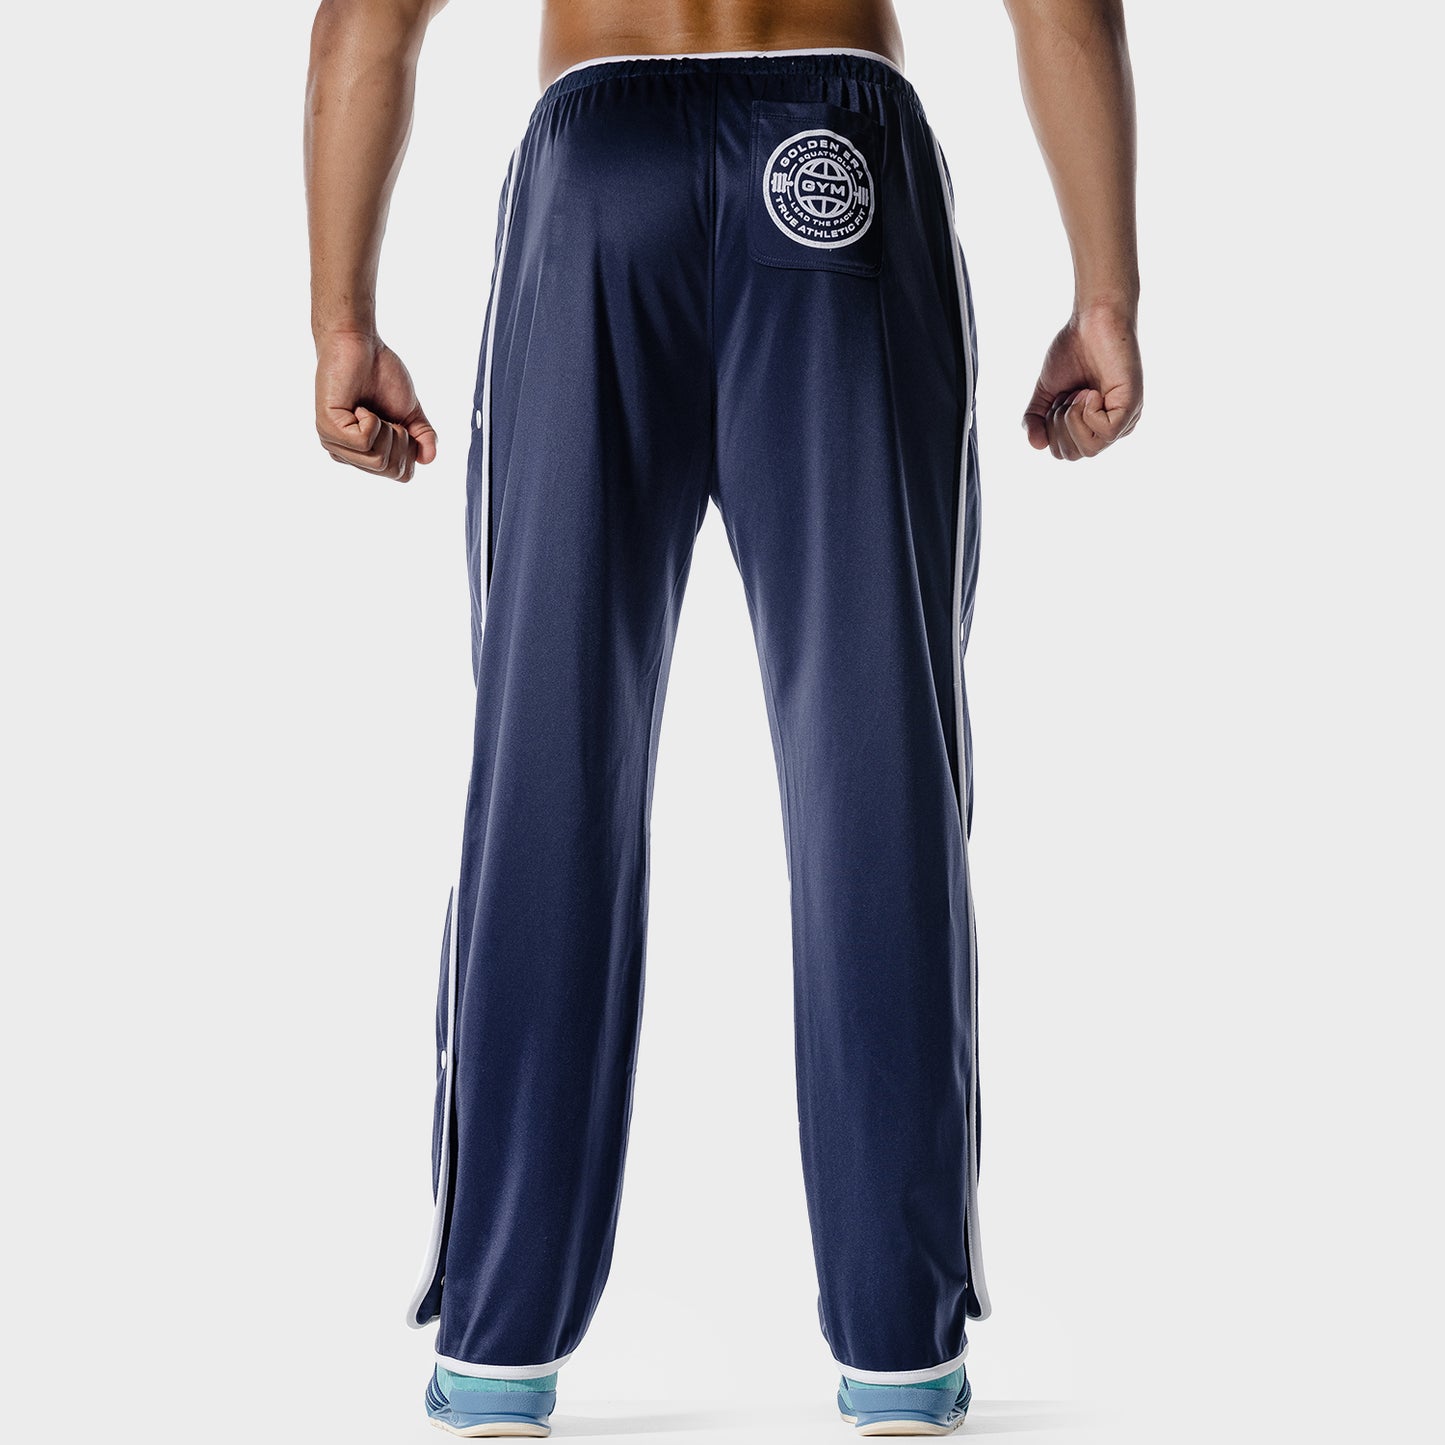 squatwolf-gym-pants-golden-era-track-pants-patriot-blue-workout-clothes-for-men